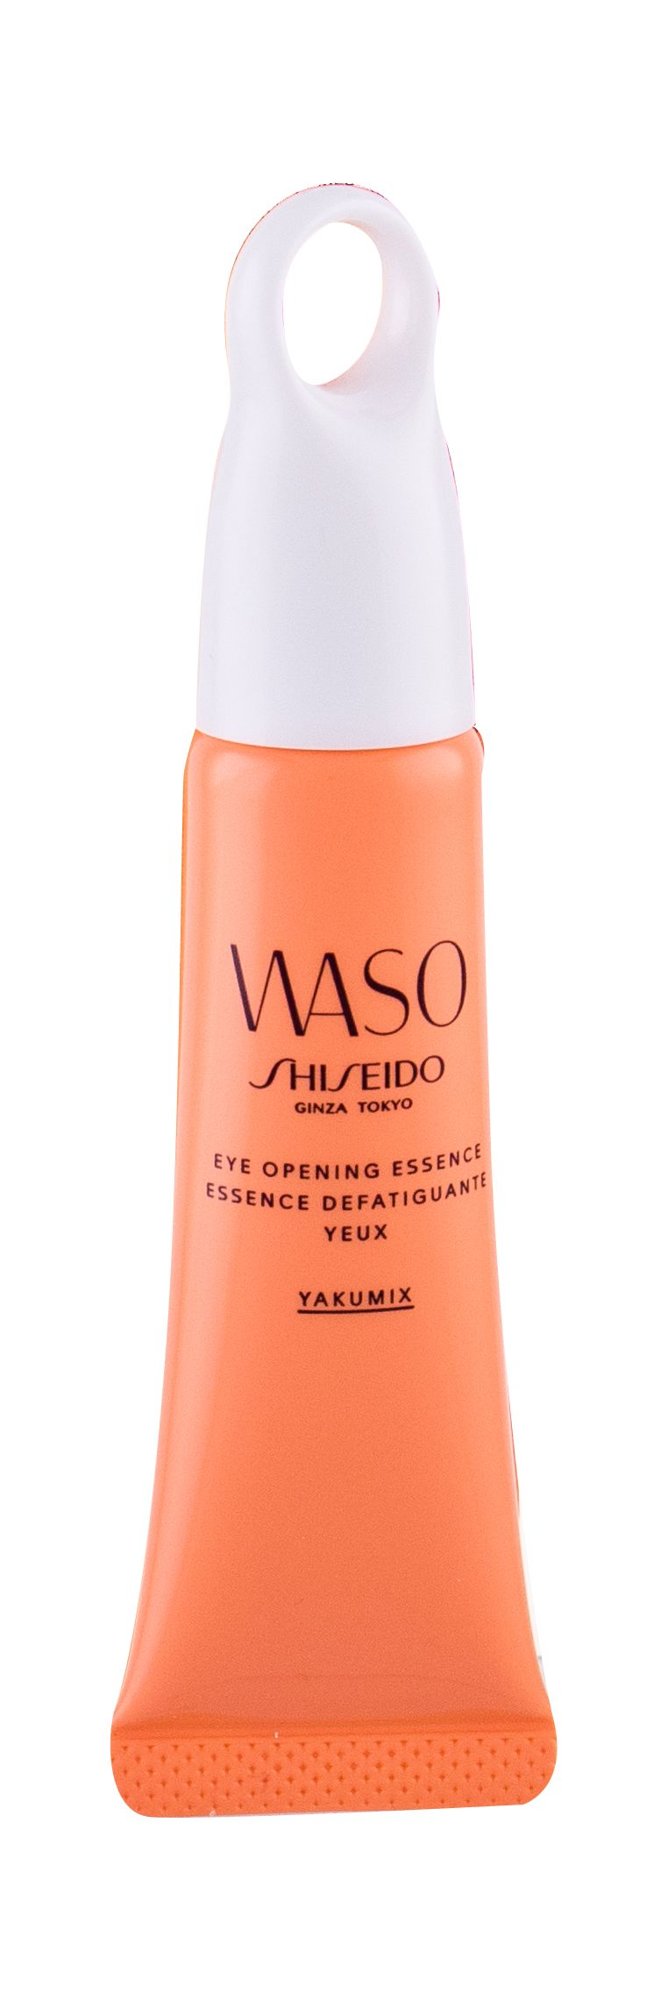 Shiseido Waso Eye Opening Essence paakių gelis